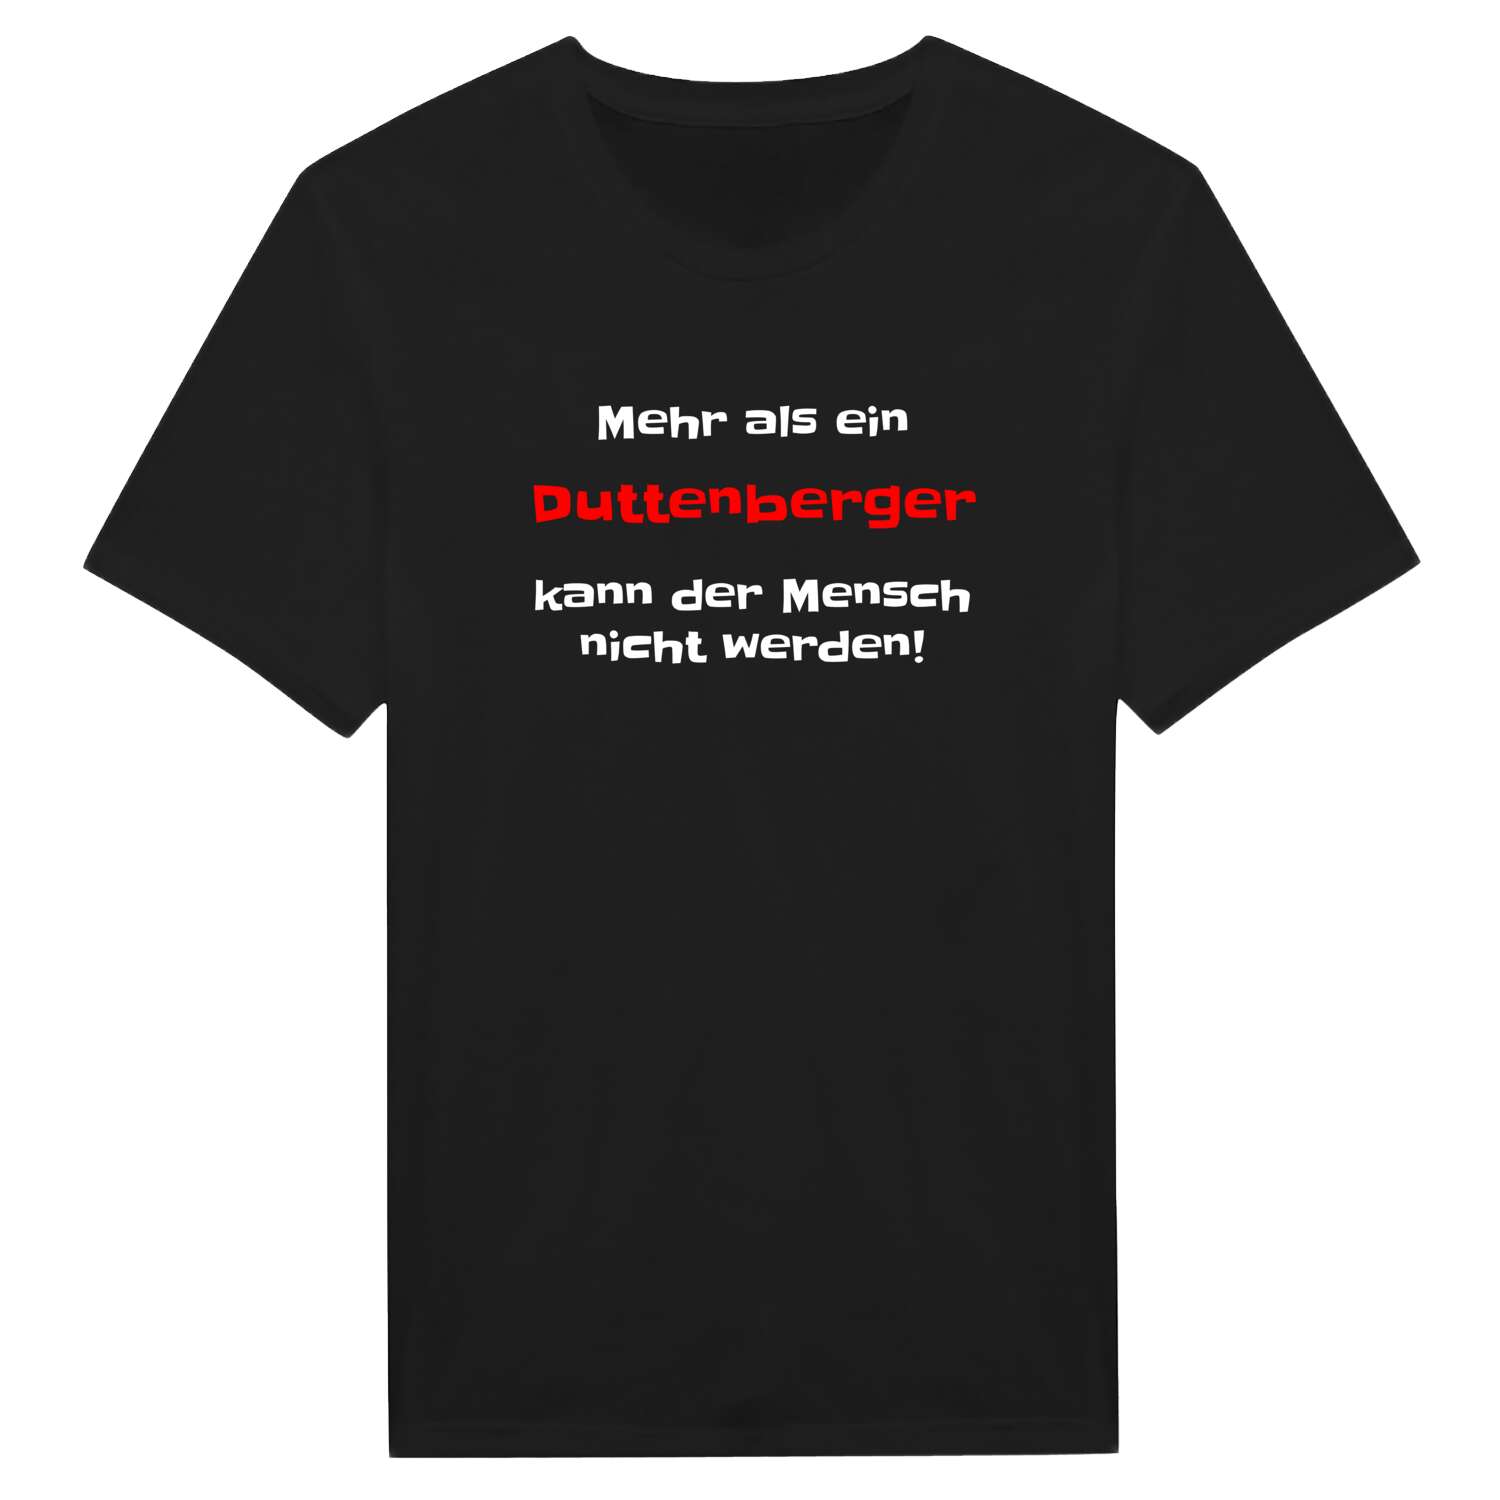 Duttenberg T-Shirt »Mehr als ein«